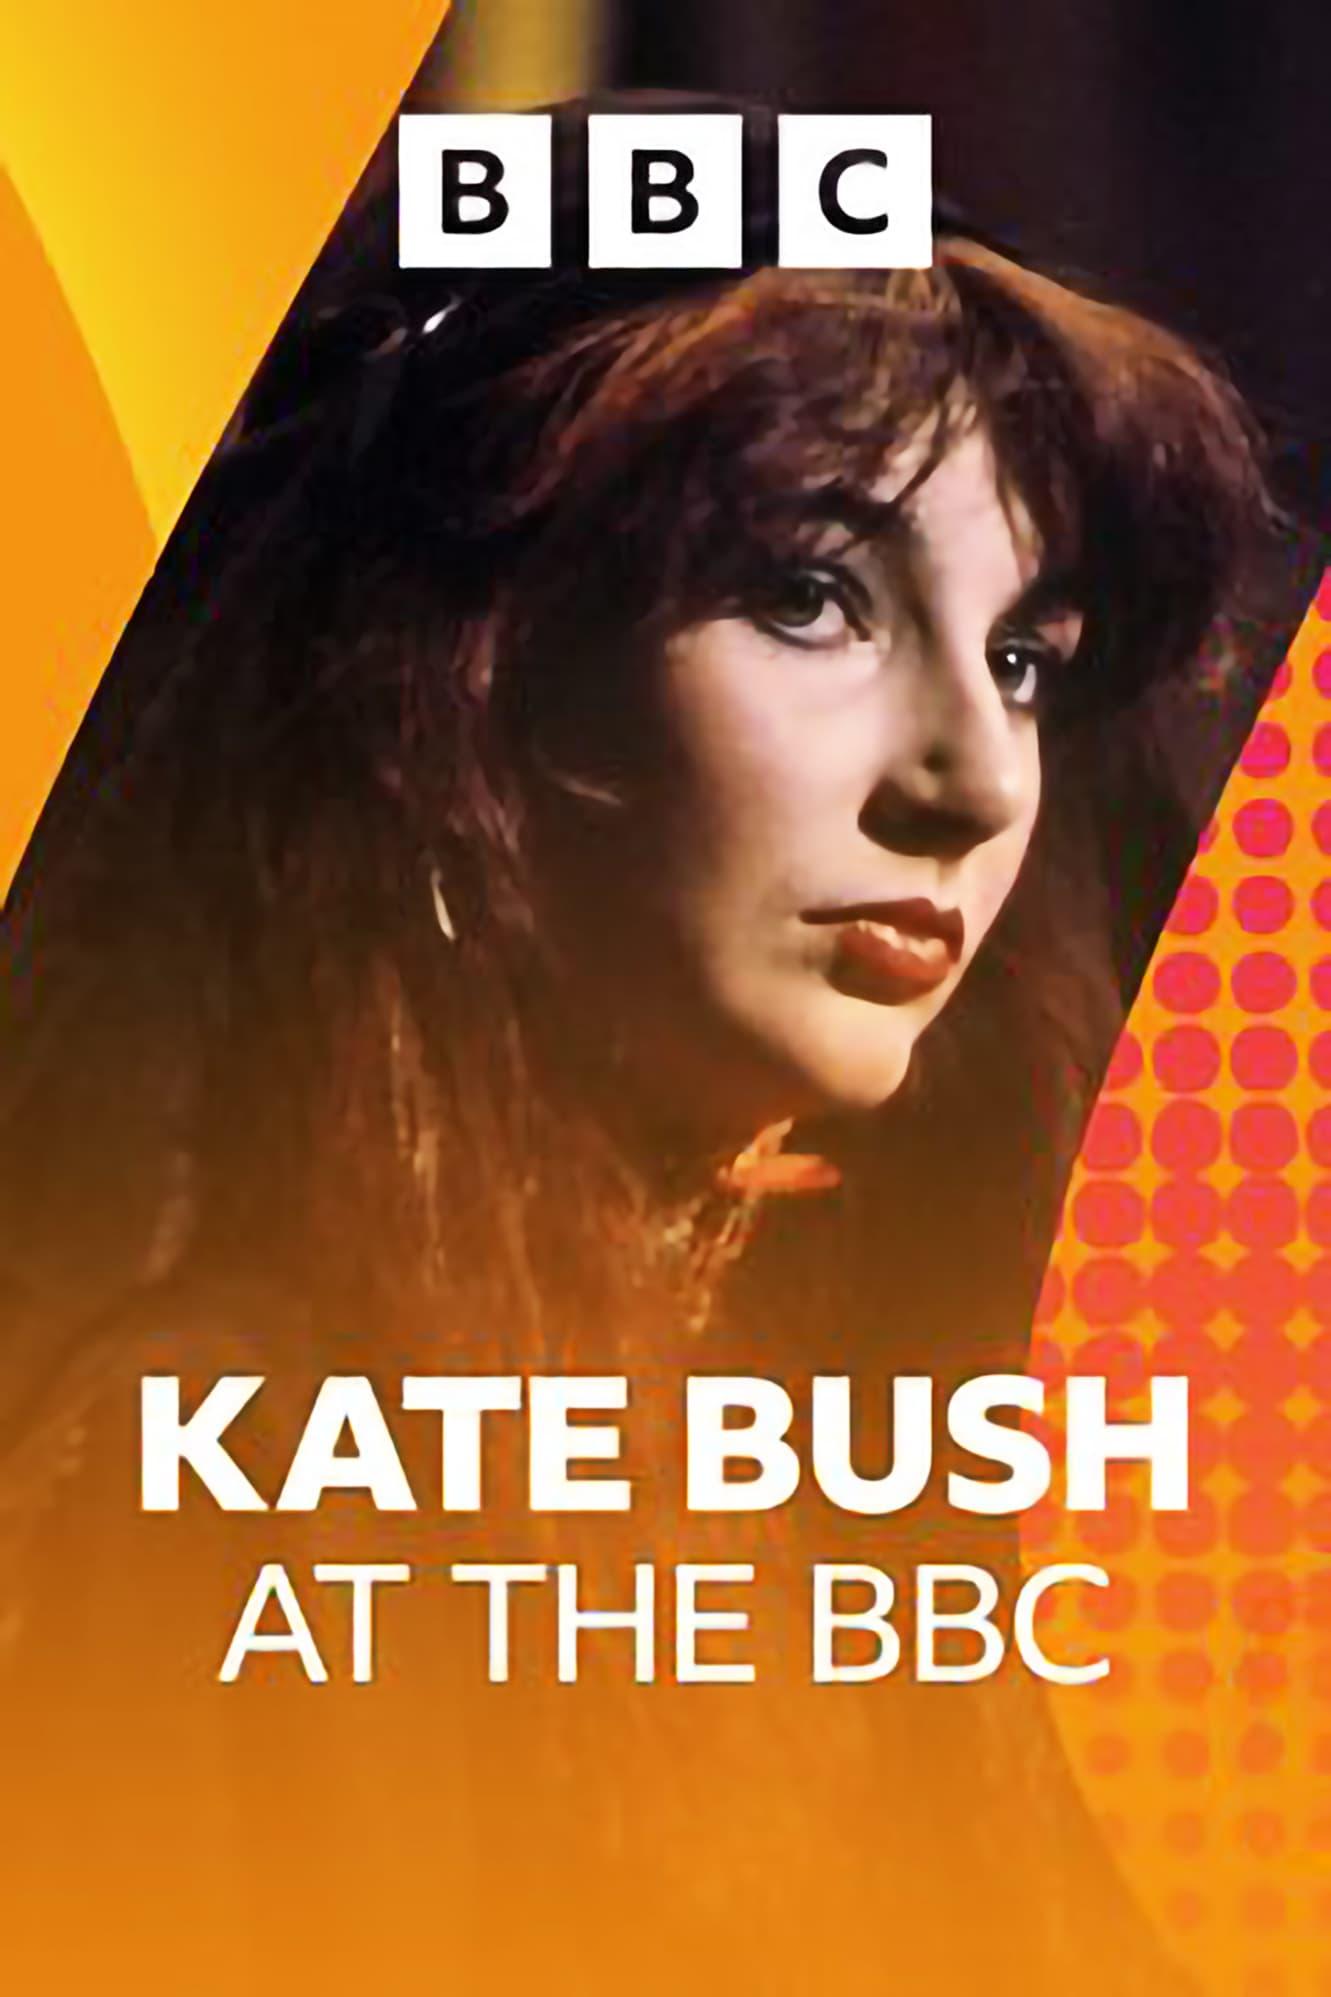 Kate Bush at the BBC poster